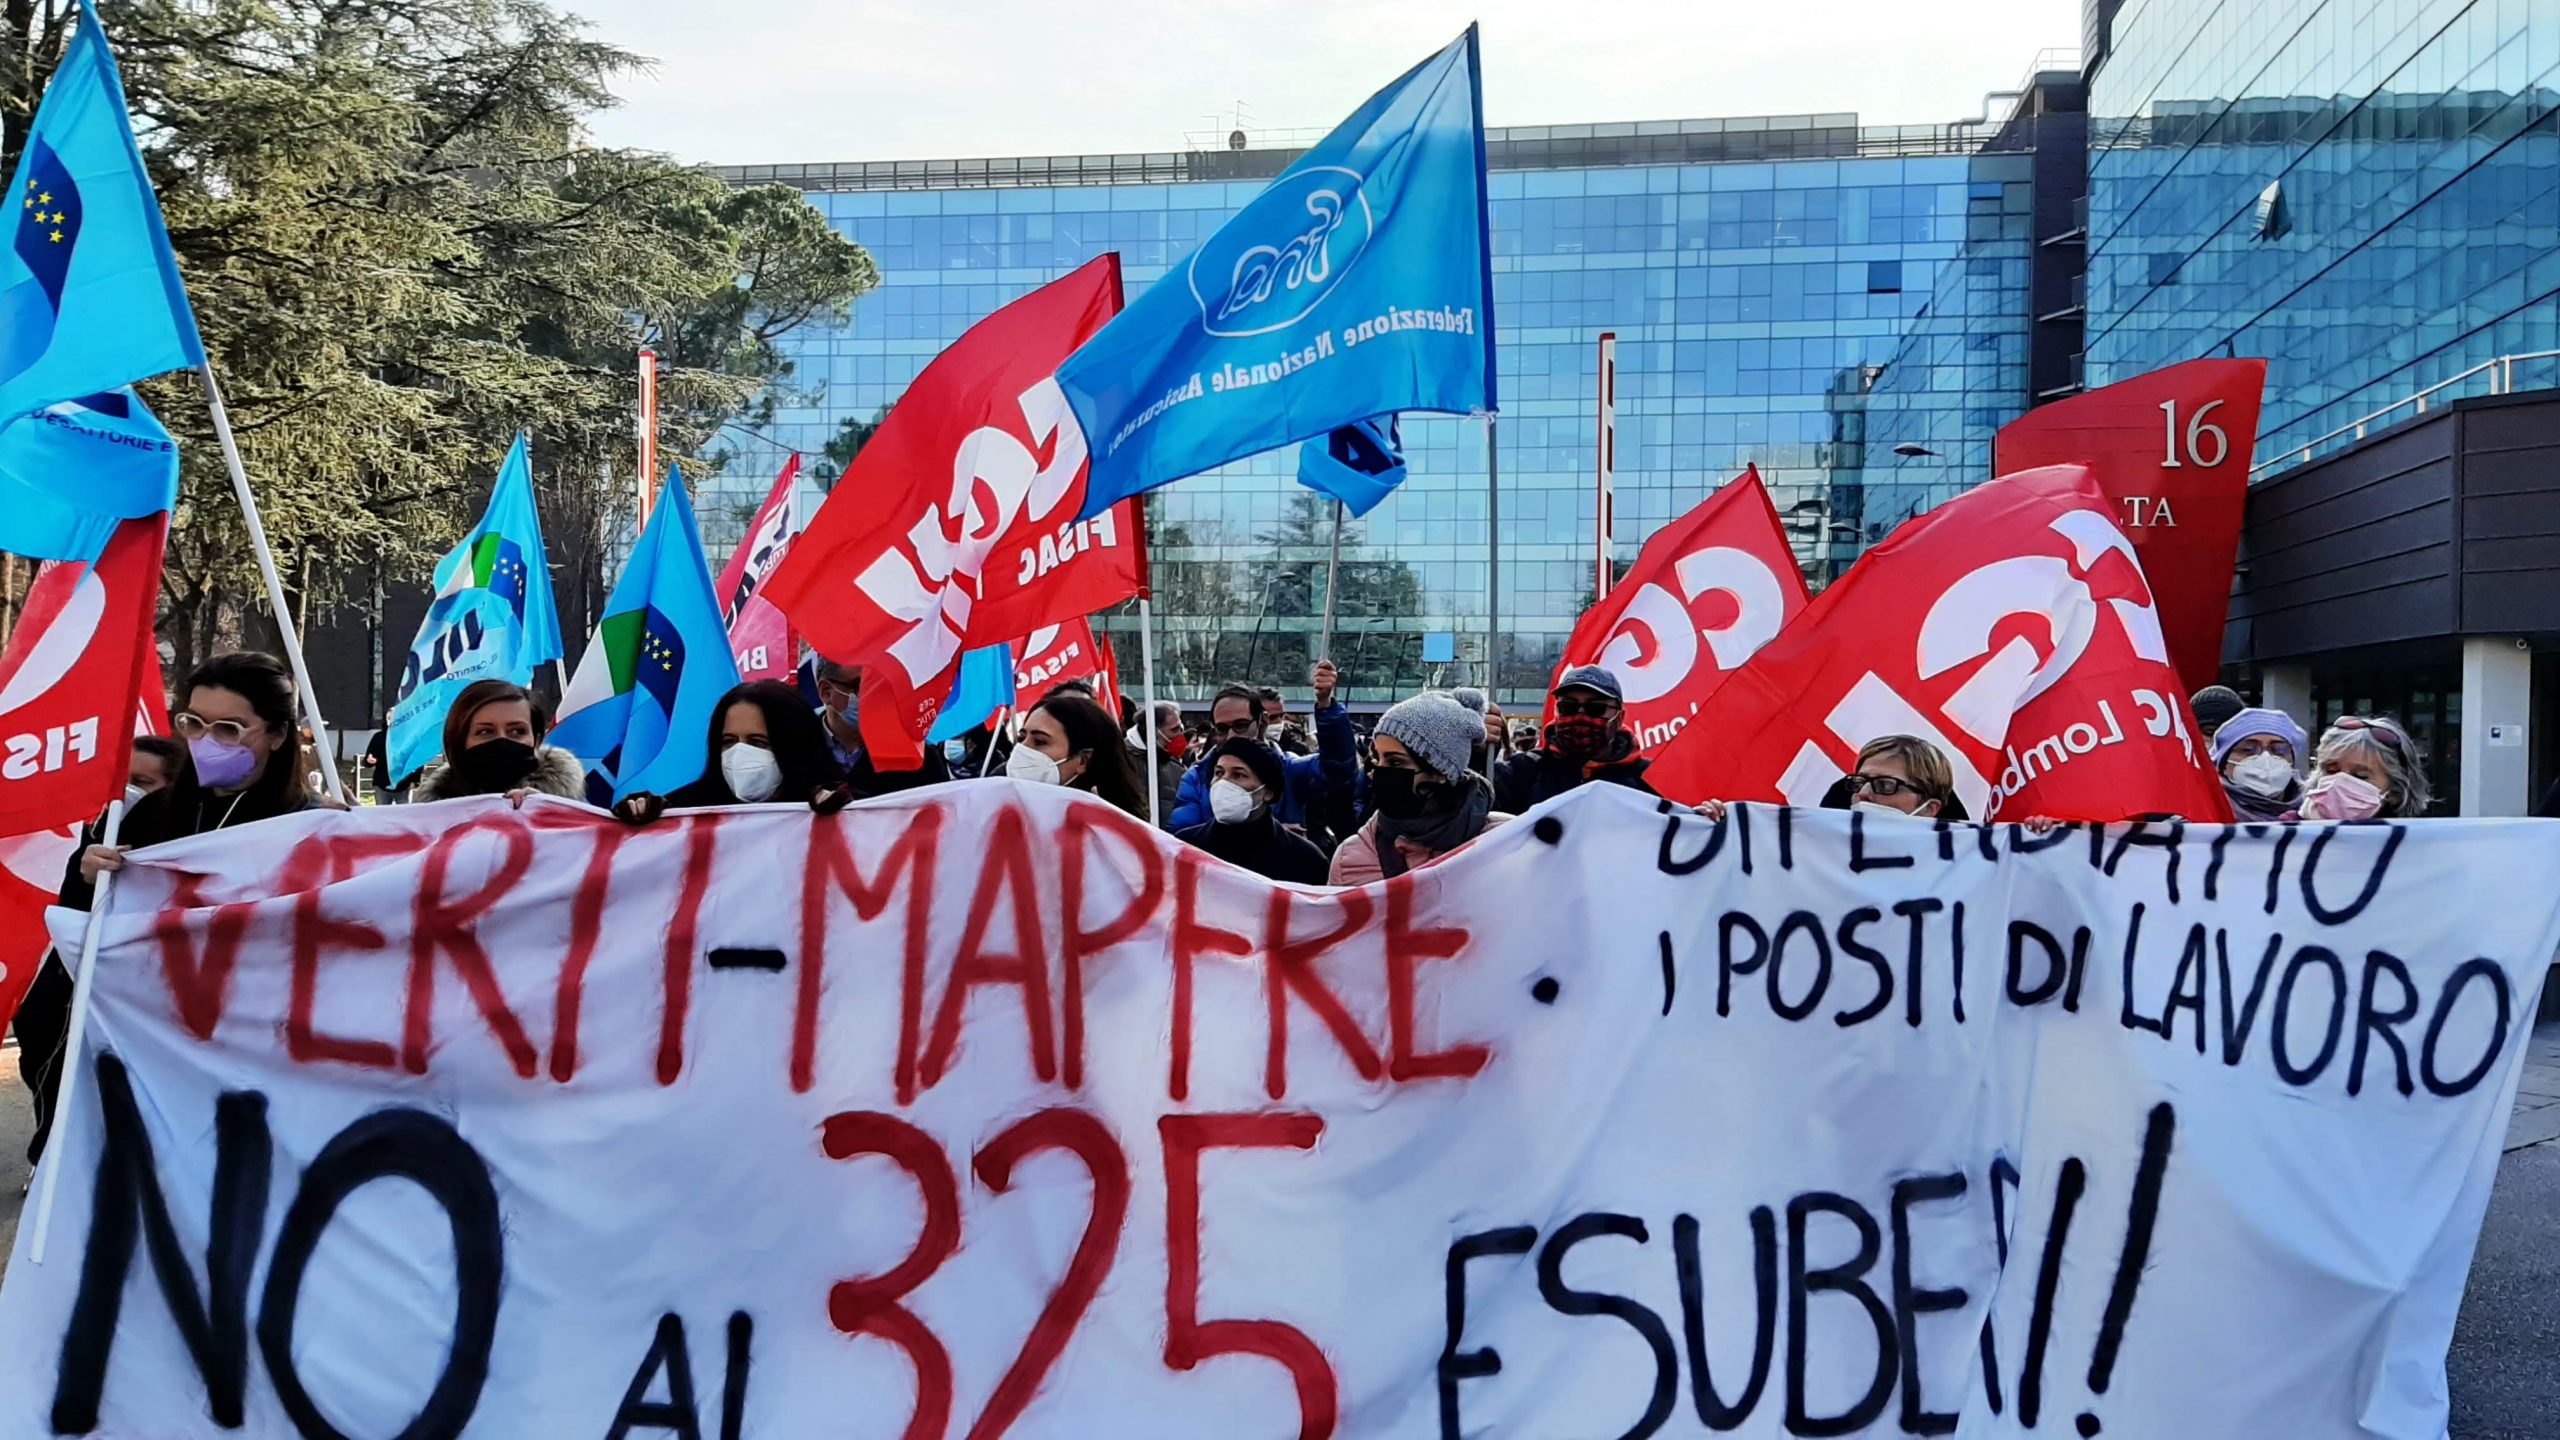 3 febbraio 2022: sciopero alla Verti